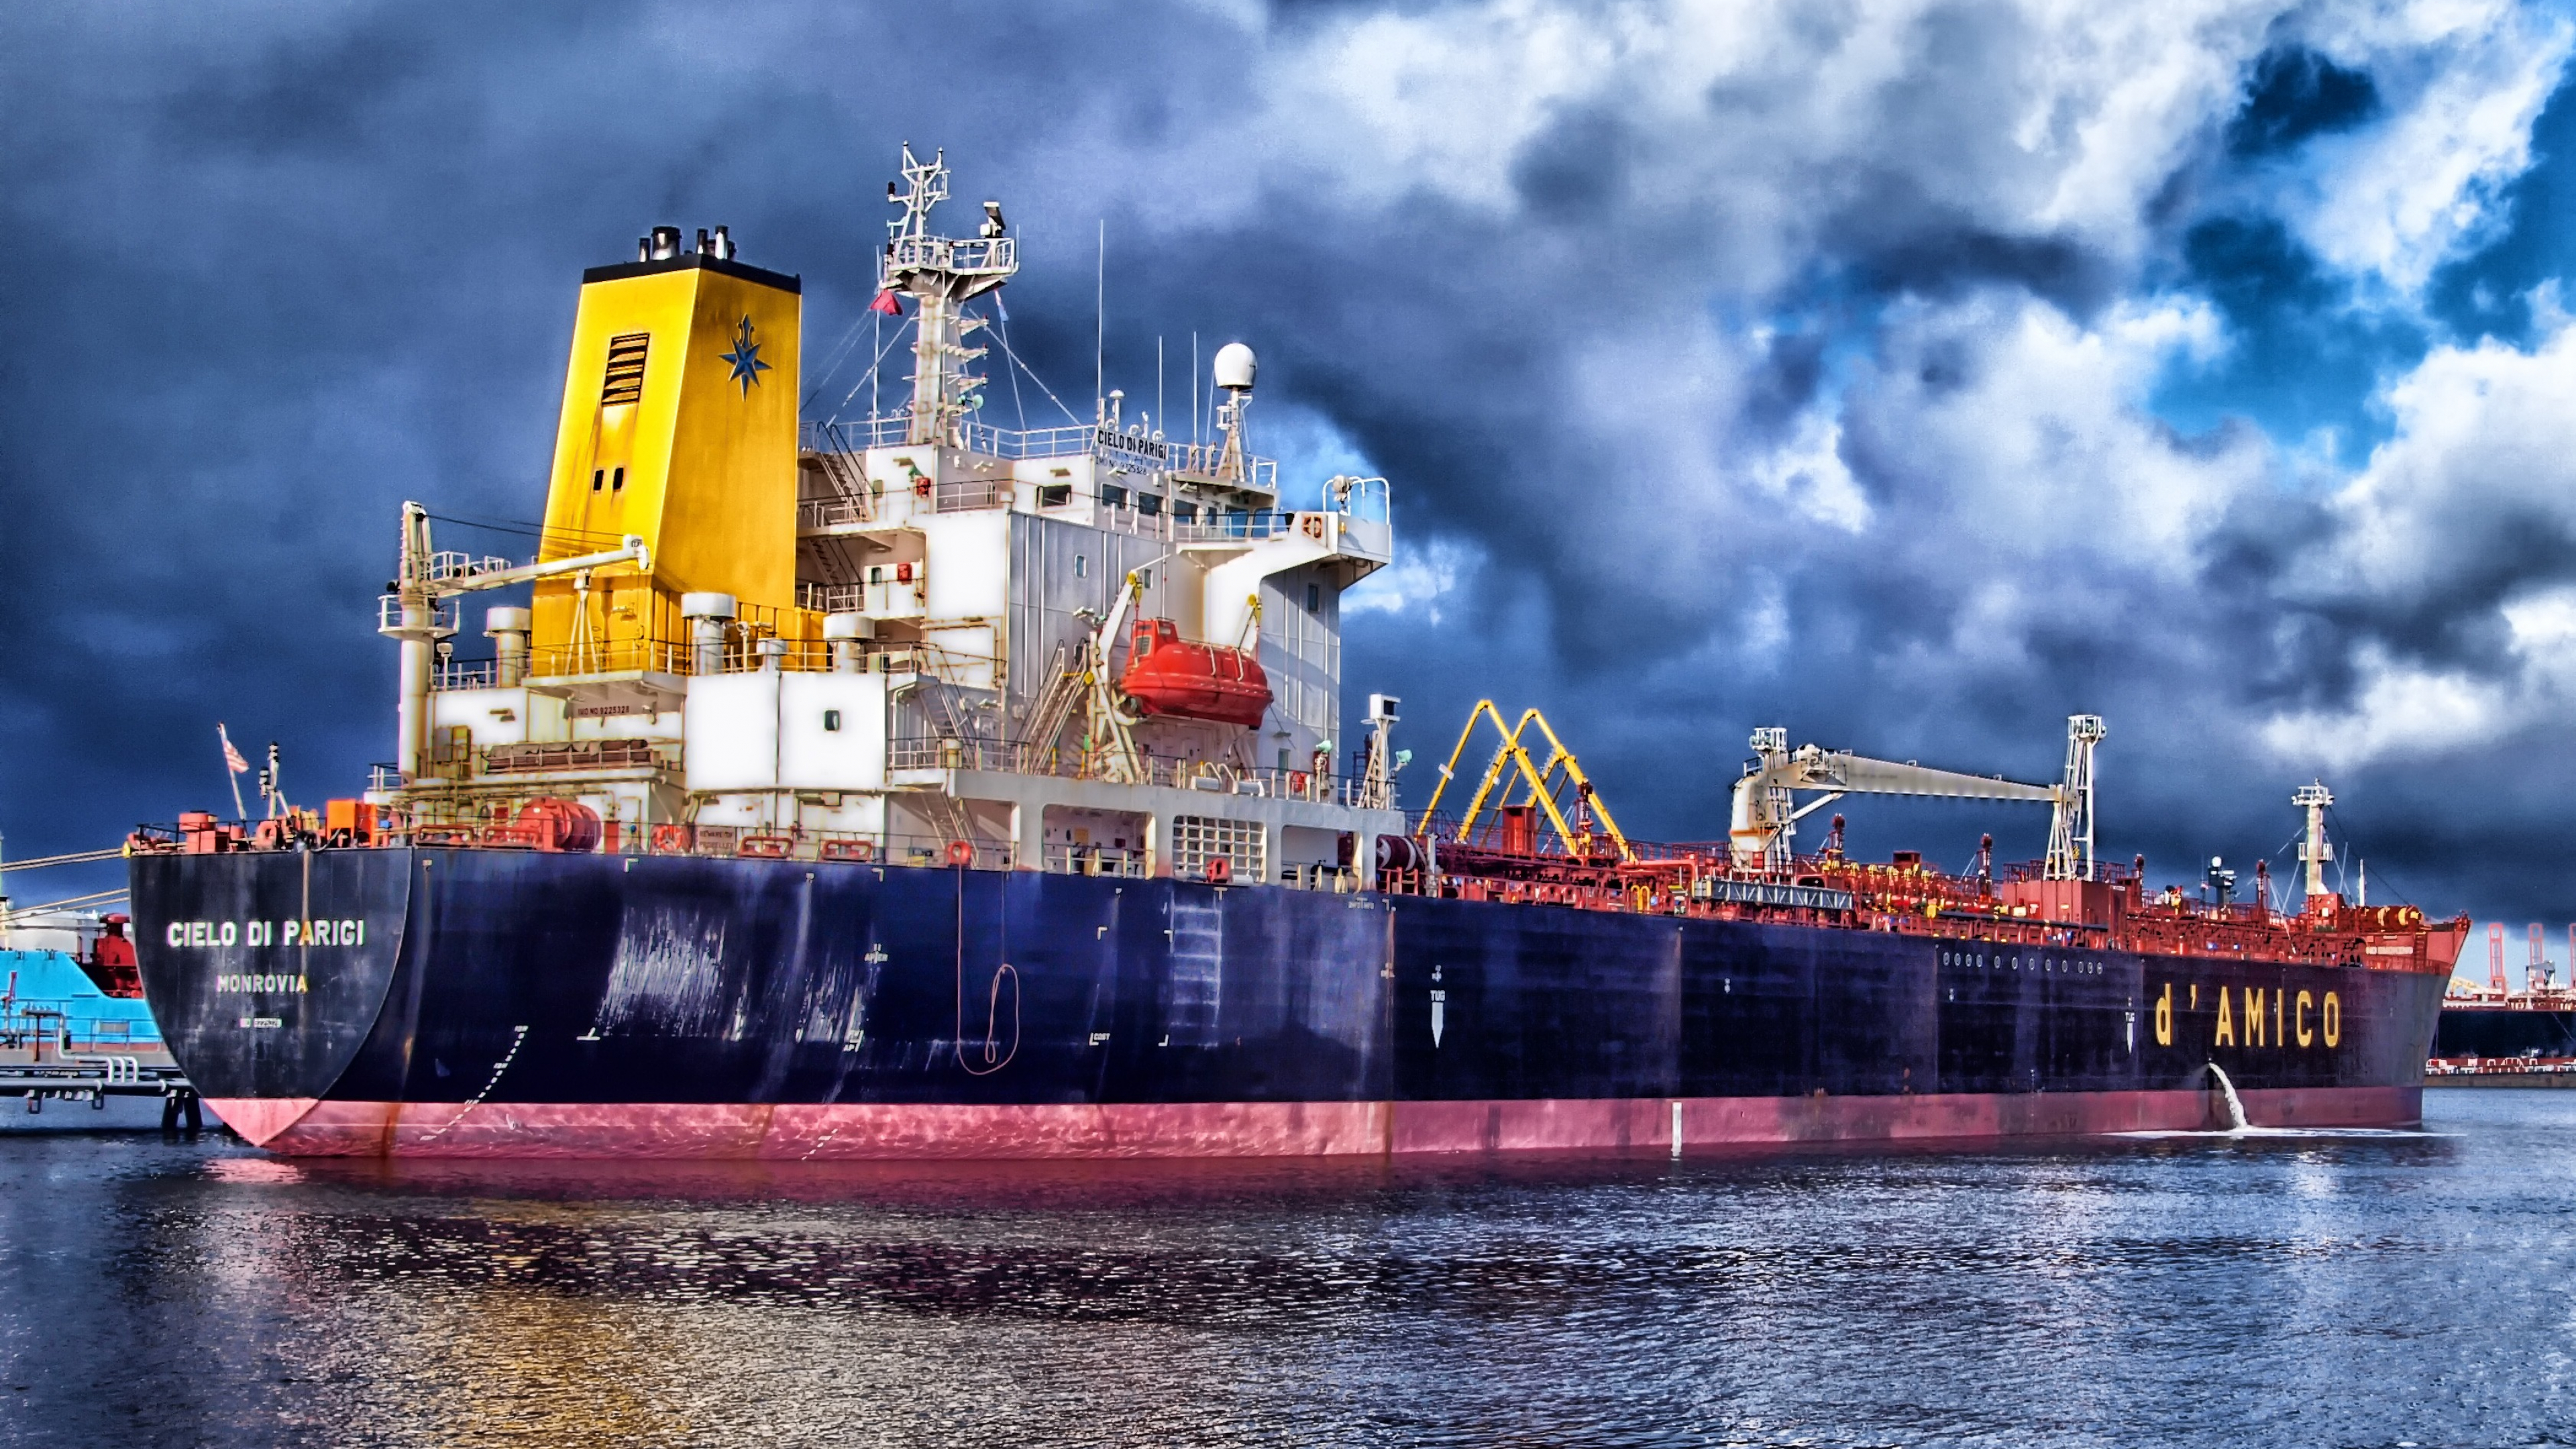 Schiff, Güterverkehr, Frachtschiff, Fracht, Wasserfahrzeug. Wallpaper in 3840x2160 Resolution